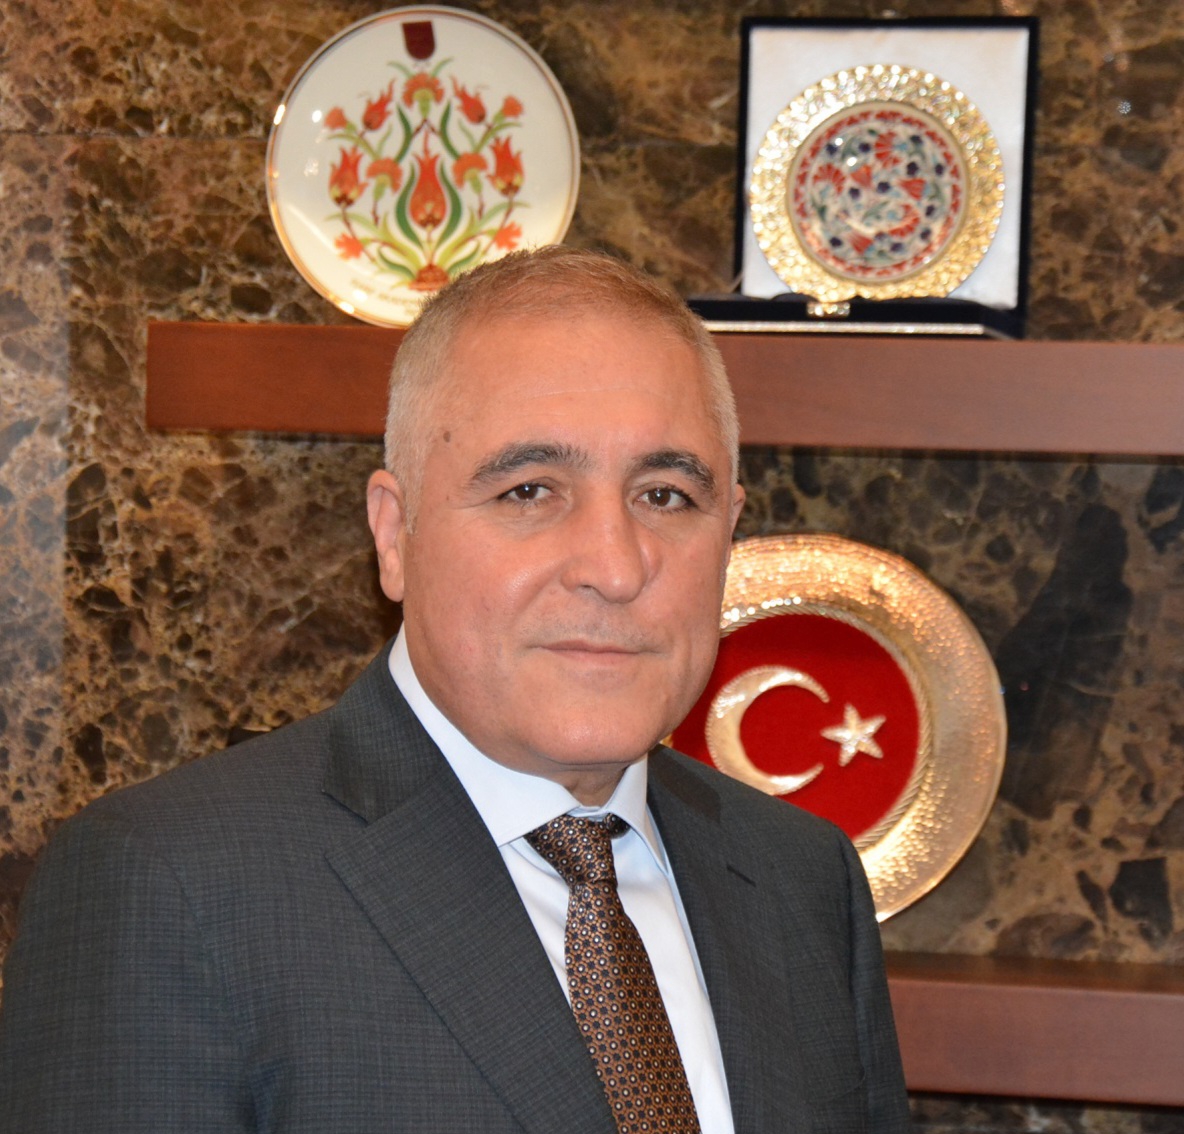 OSB Başkanı Cengiz Şimşek: 